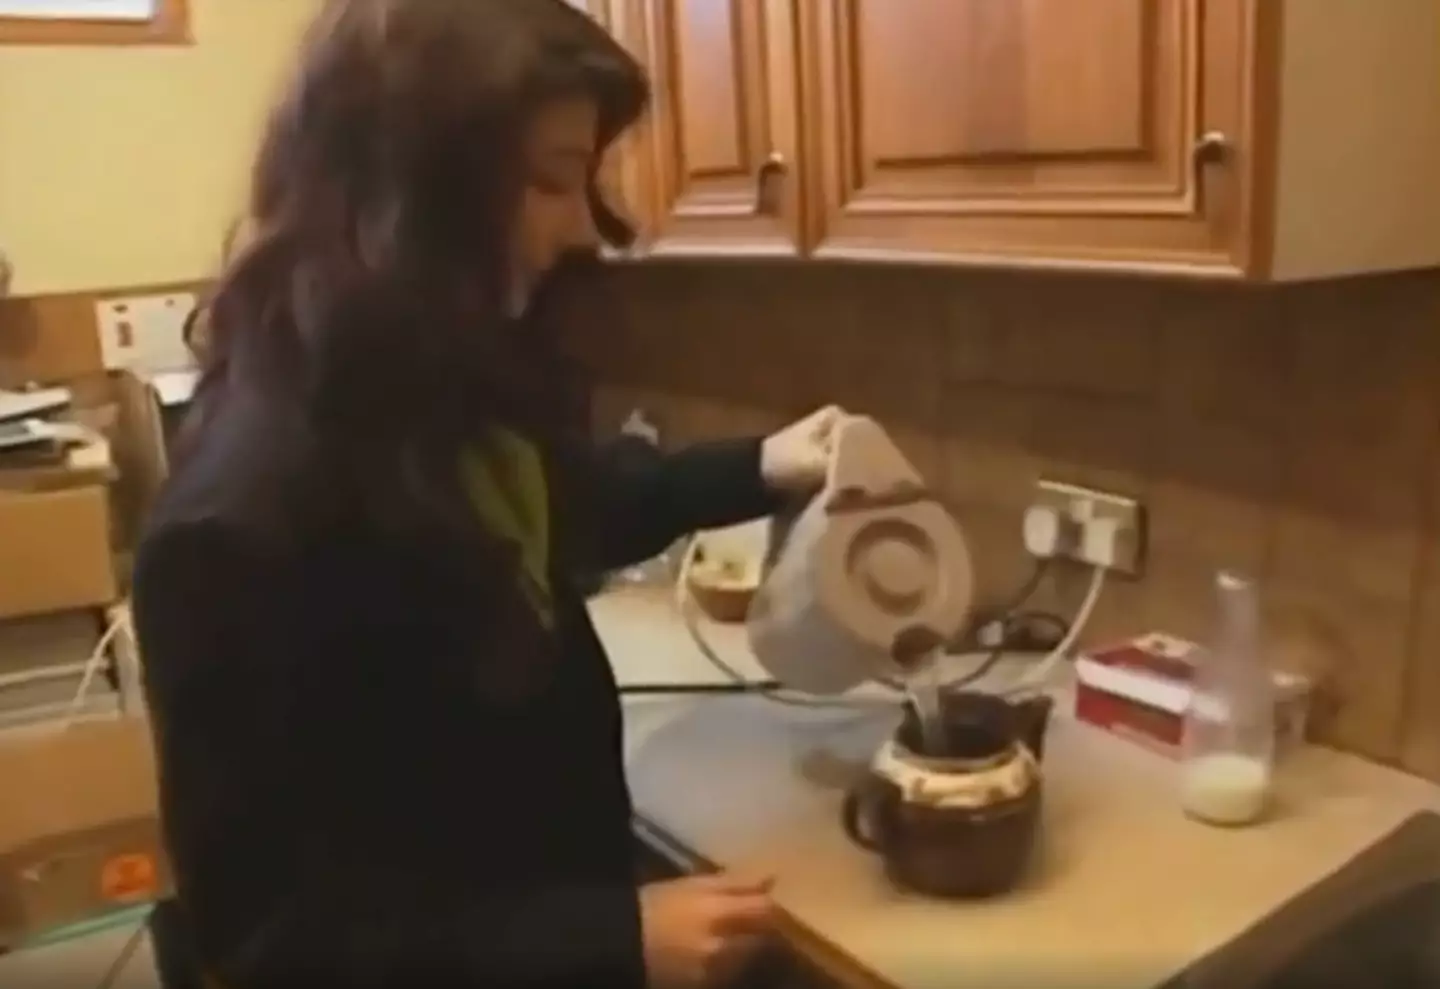 Kate Bush's tea-making skills are... unique.